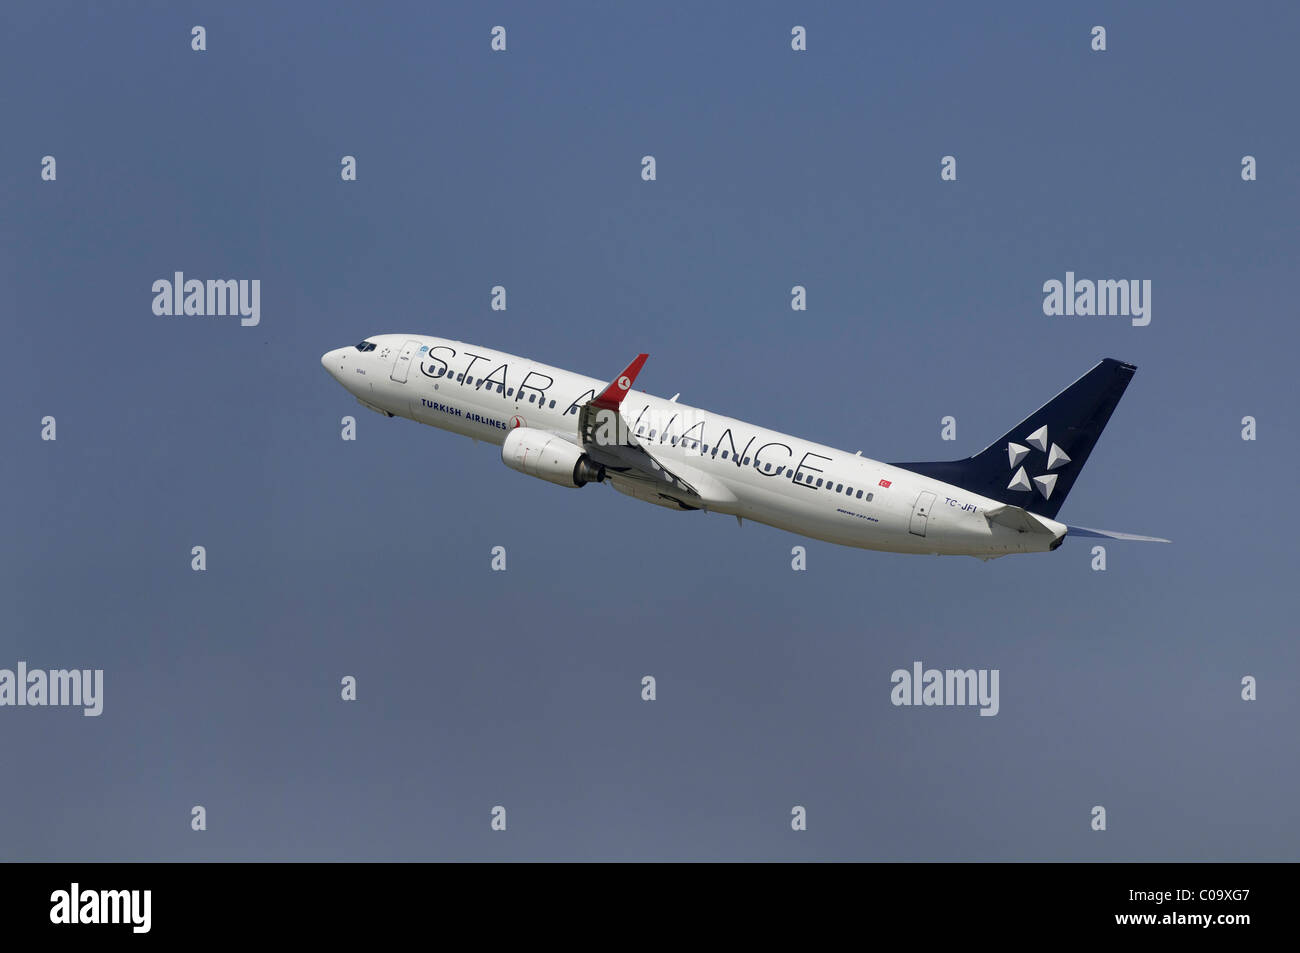 Gli aeromobili commerciali, arrampicarsi Turkish Airlines in unione "Star Alliance", con speciale vernice Foto Stock